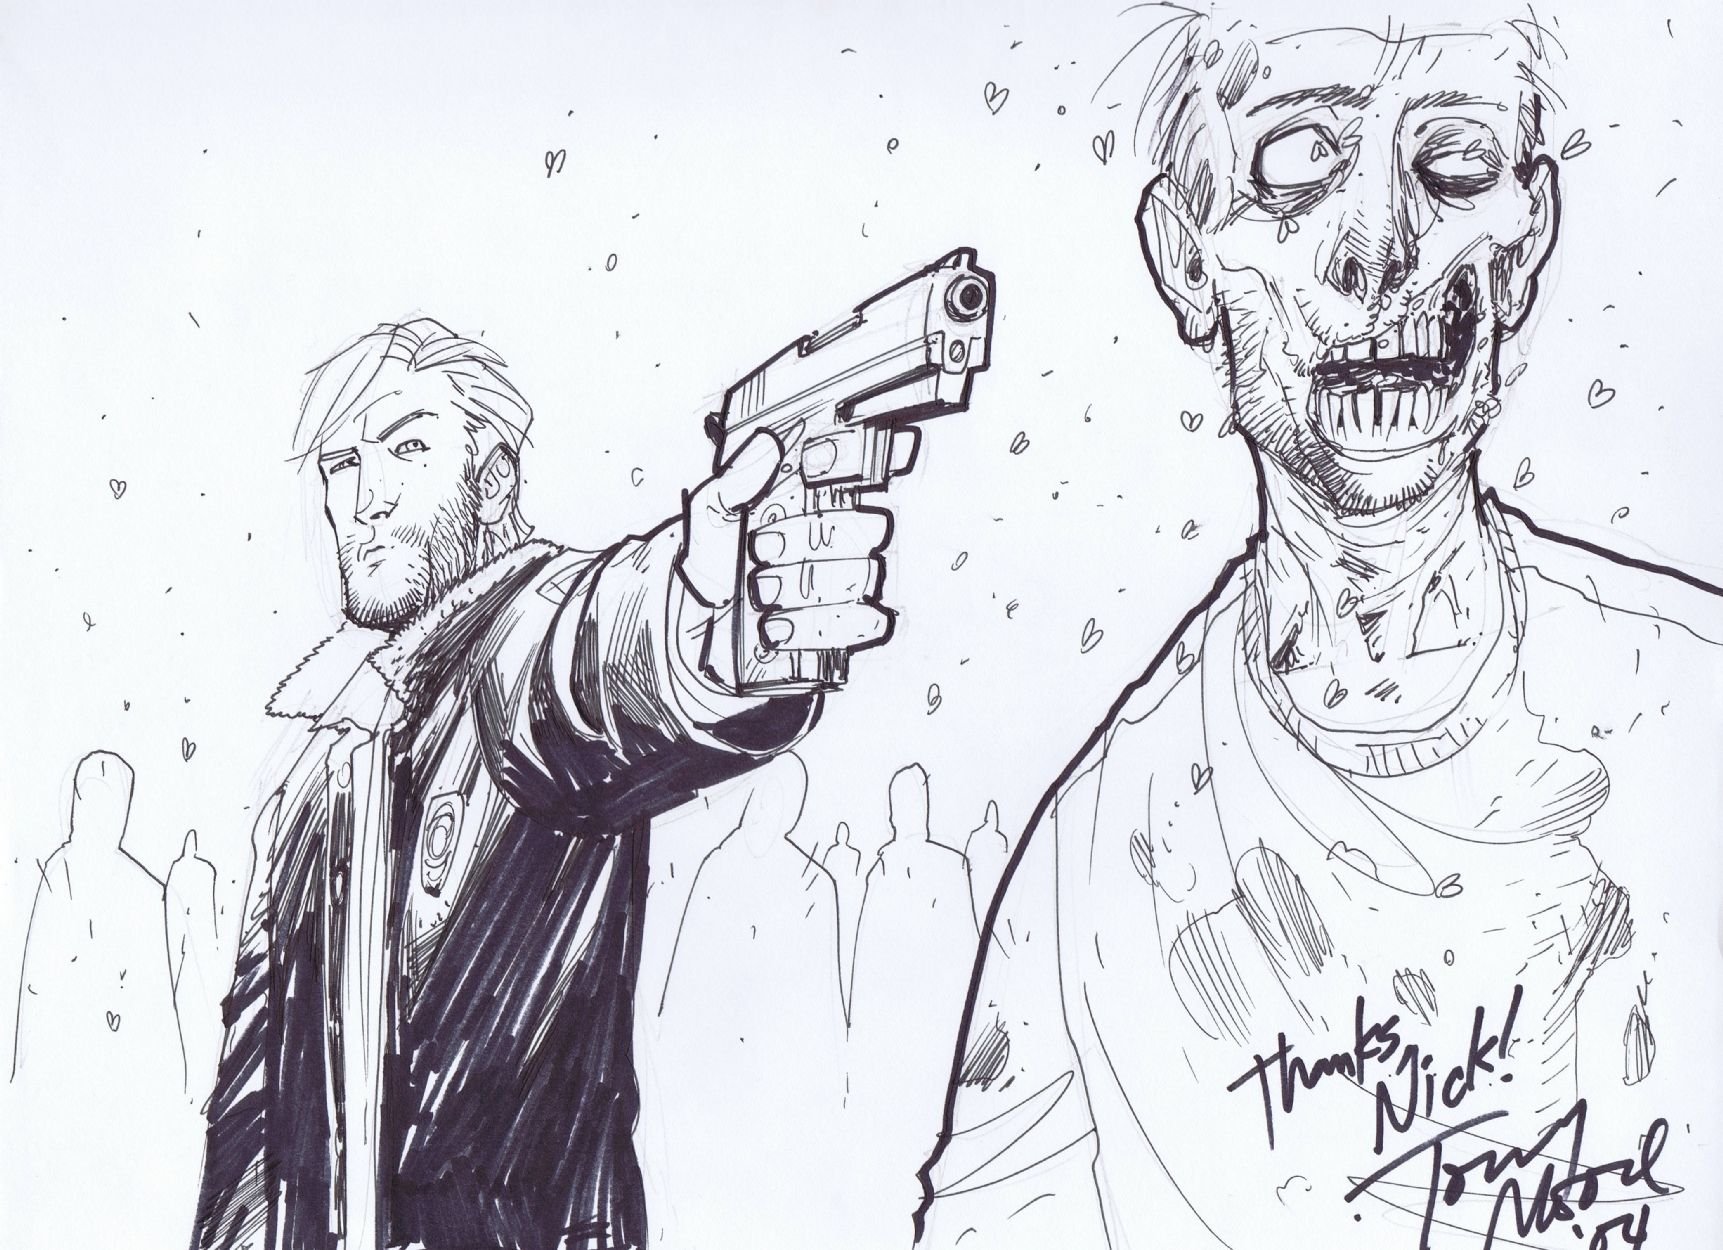 Включи зомби нарисовал. Рик Ходячие мертвецы комикс. Рик Граймс комикс Тони Мур. Тони Мур Ходячие мертвецы.